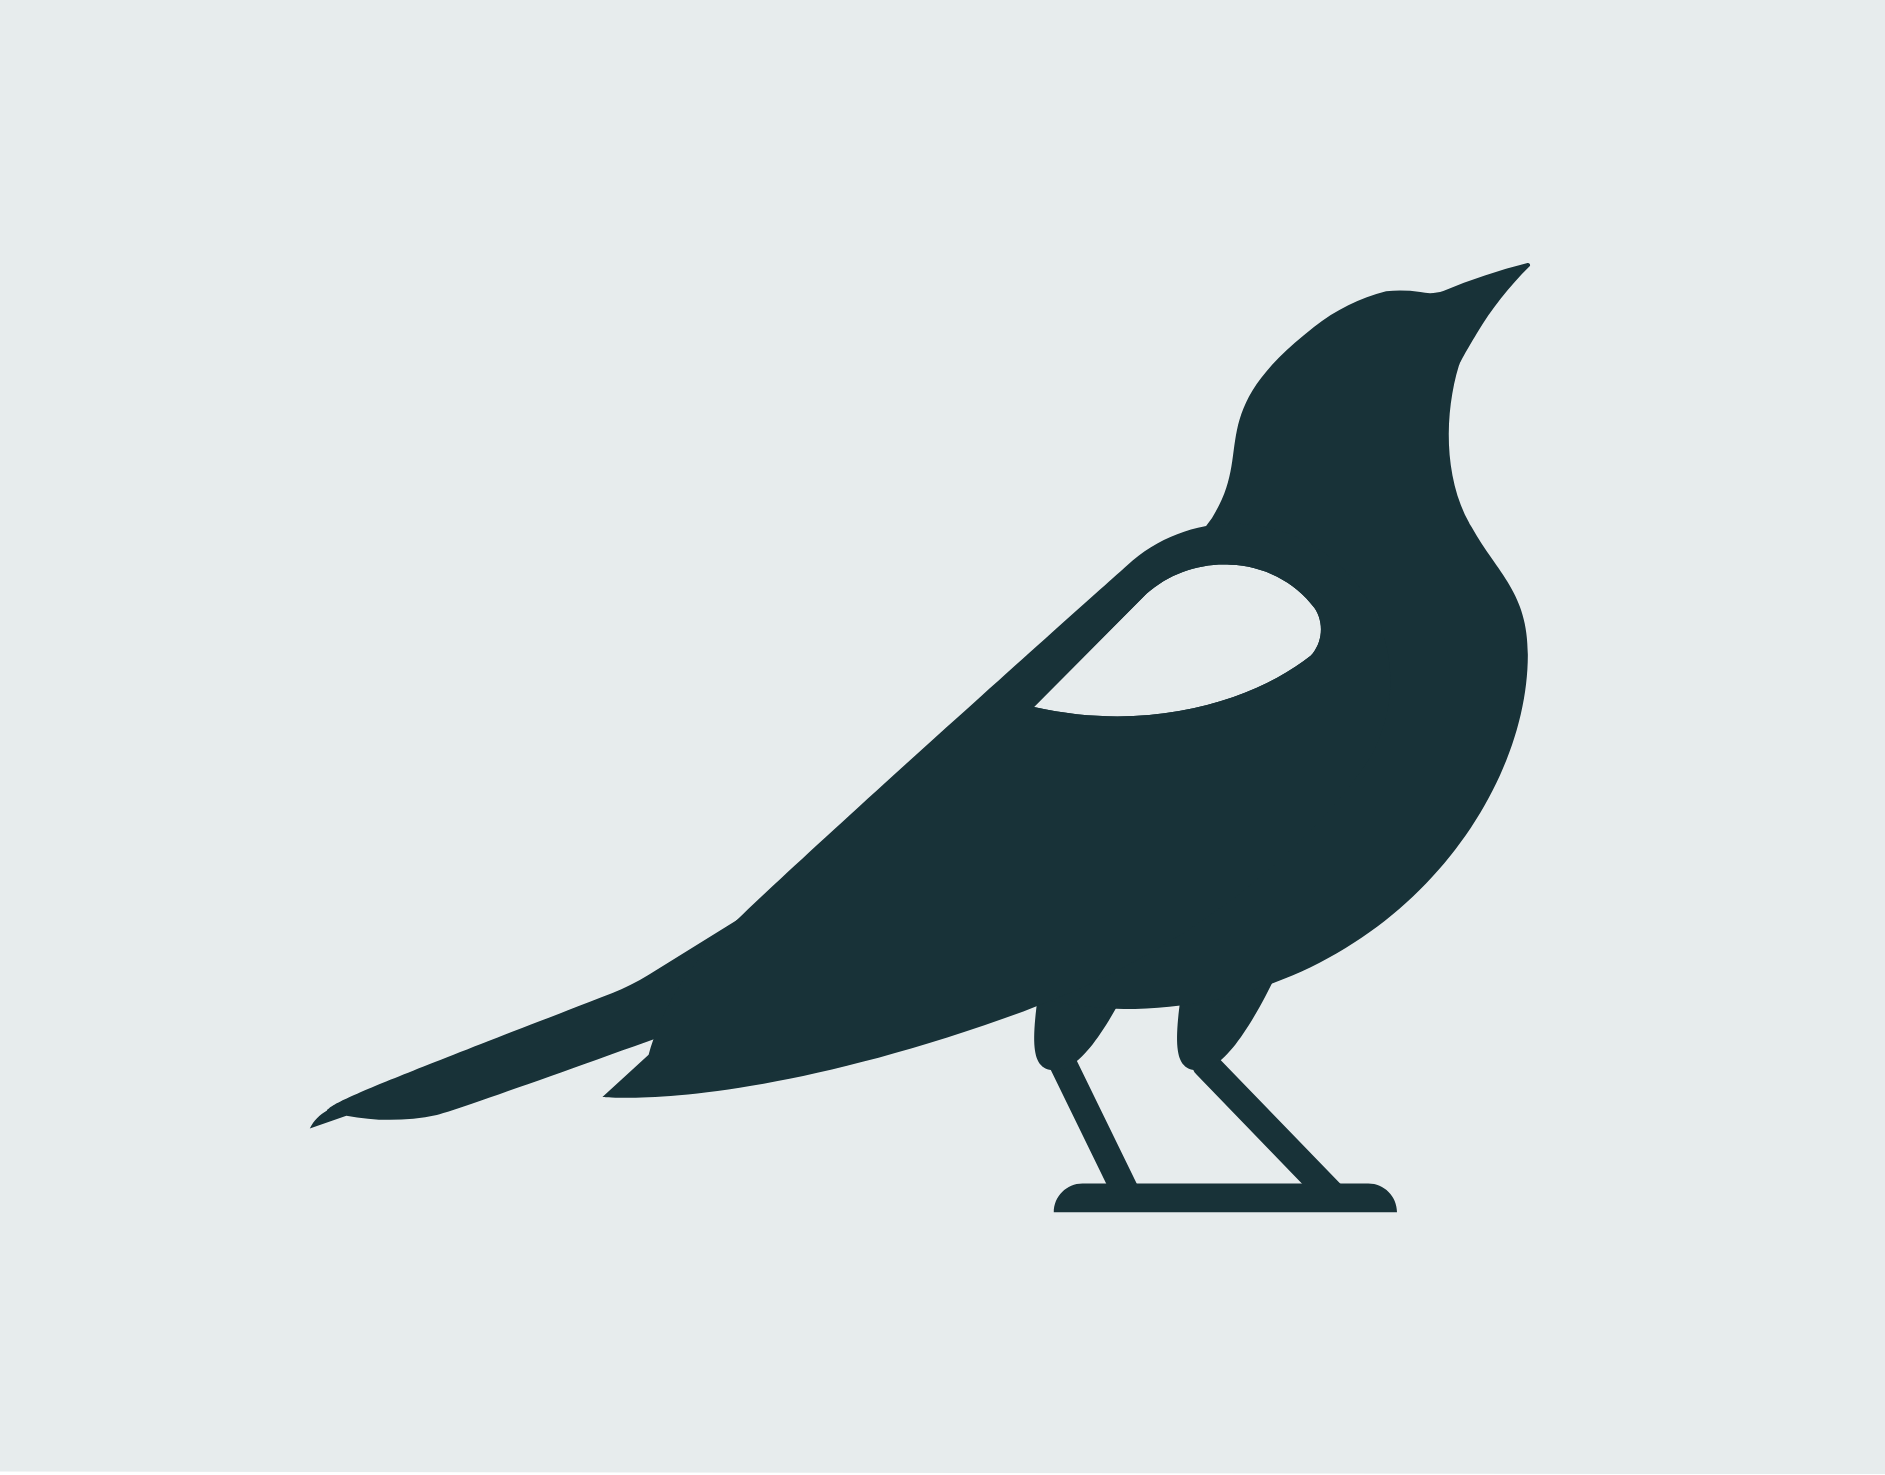 Blackbird Branding. February 2020